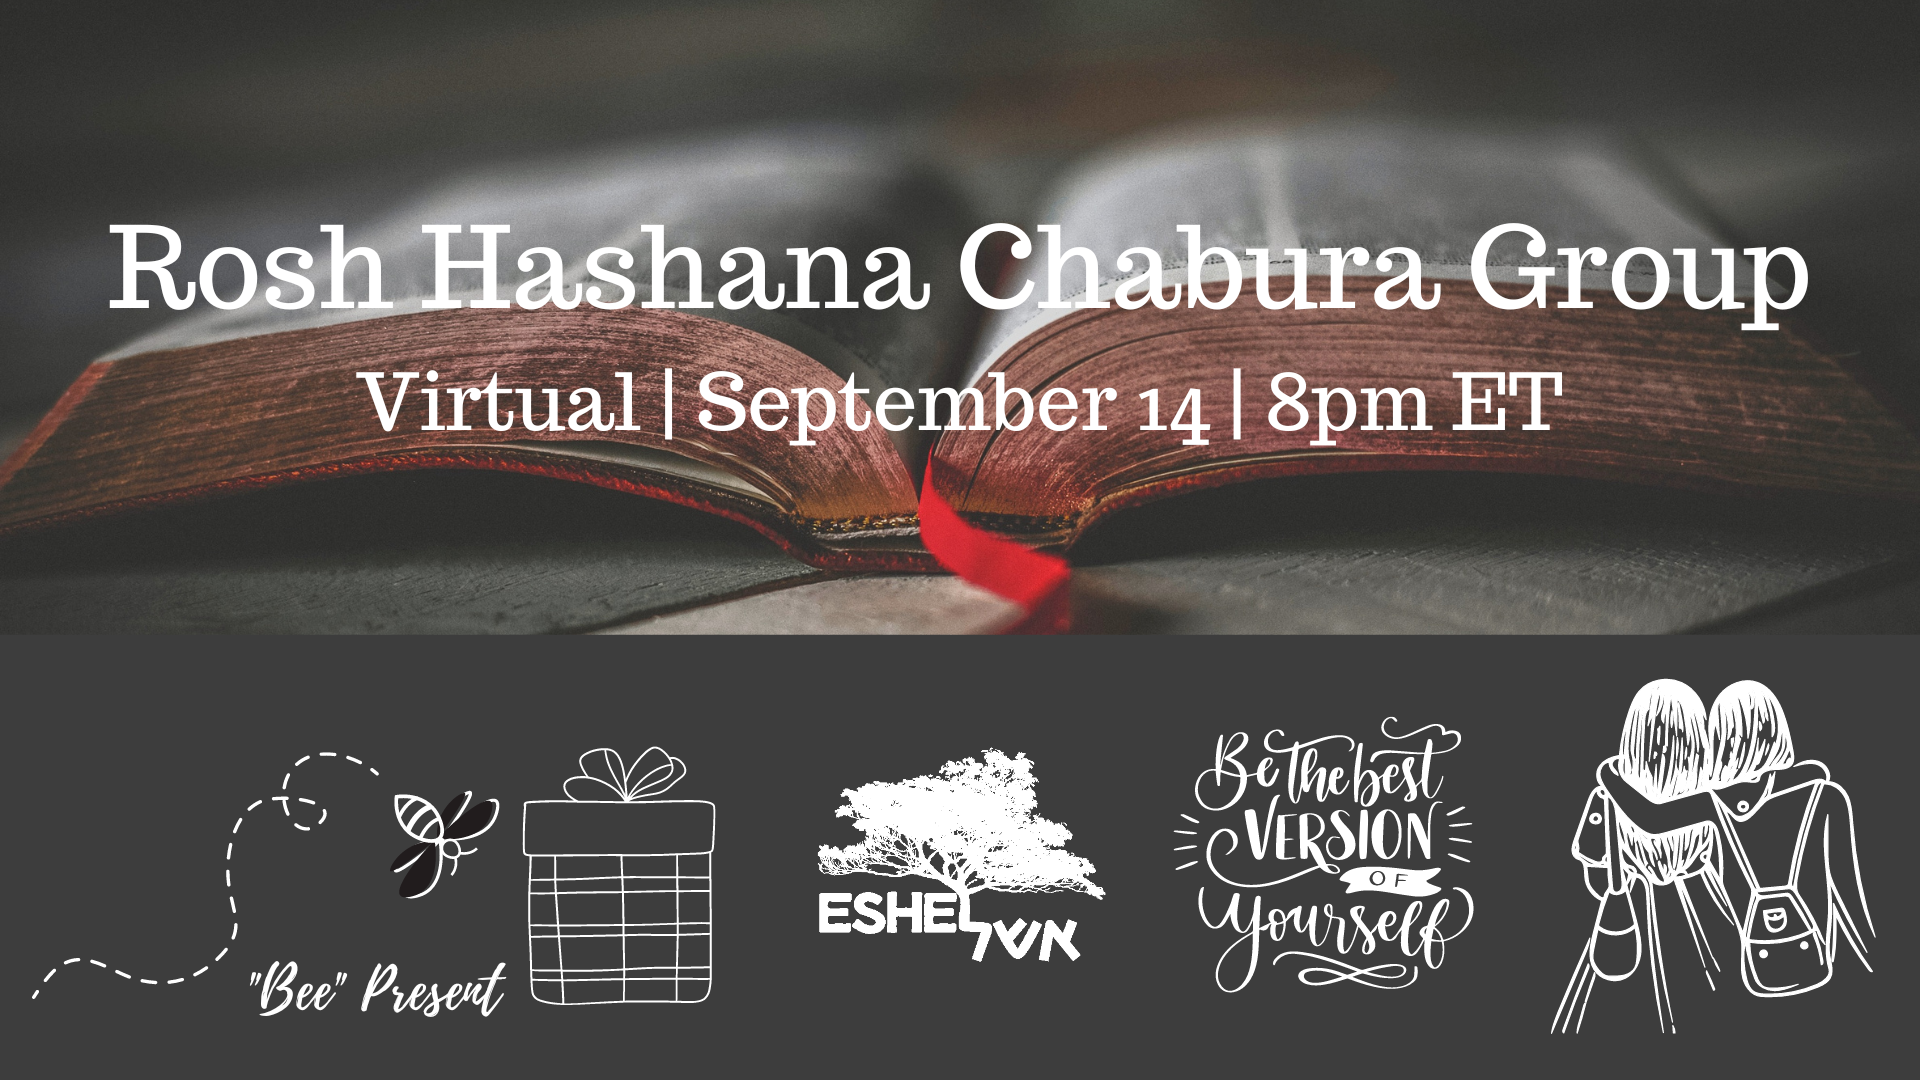 Rosh Hashana Chabura Group Virtual September 14 8pm ET